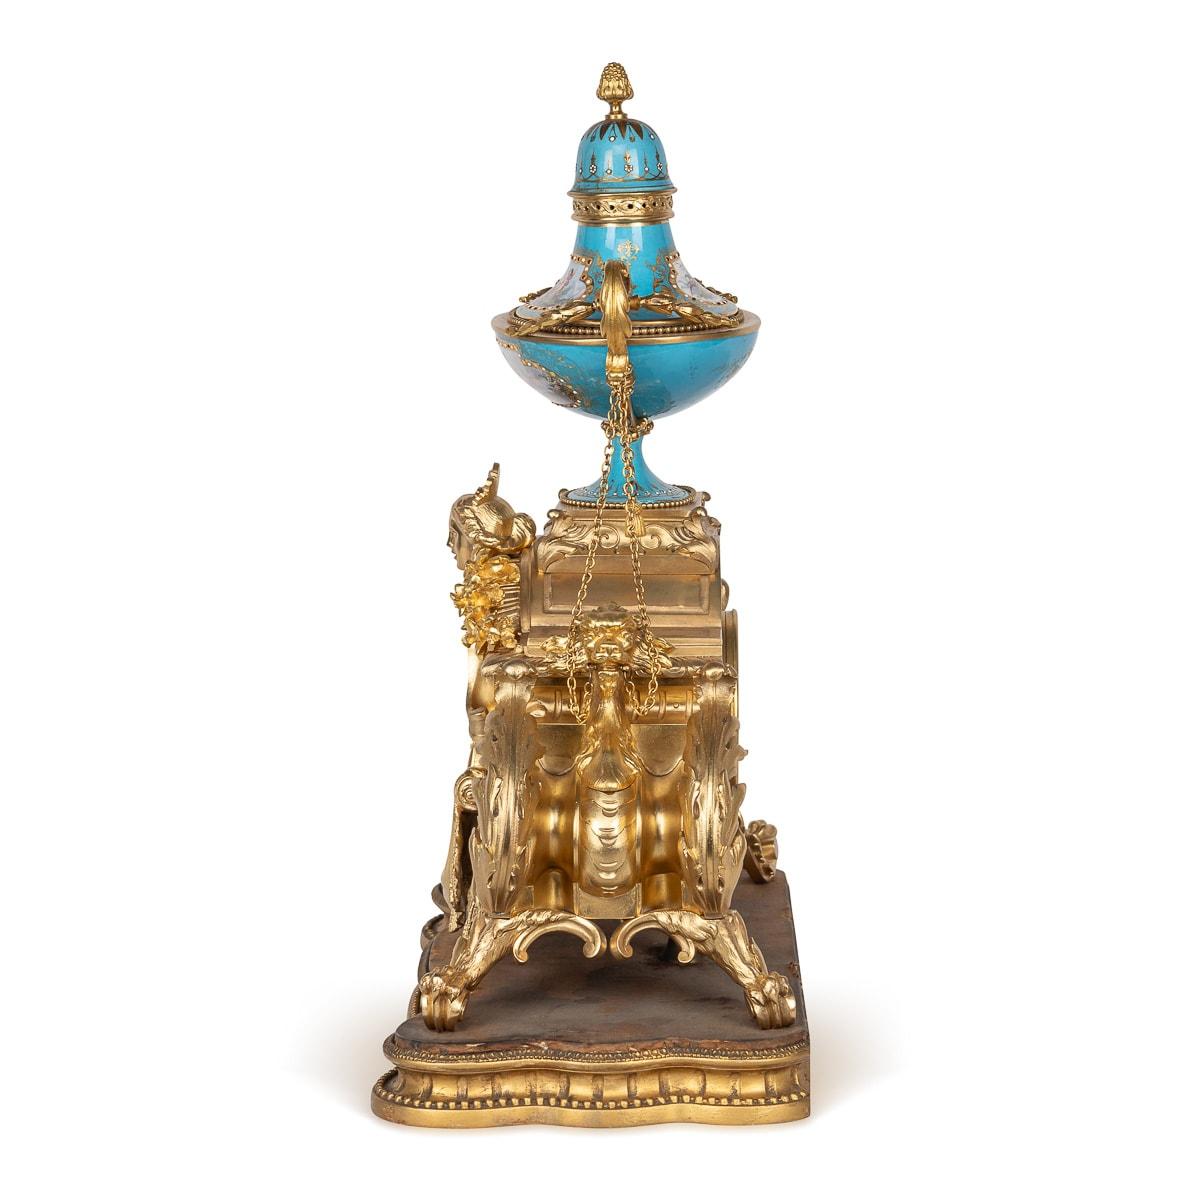 Pendule de cheminée ancienne du XIXe siècle, de style Louis XV, une pièce captivante façonnée en porcelaine de style Sèvres et ornée d'accents en bronze doré. L'horloge est surmontée d'une urne en porcelaine peinte de couleur bleu céleste, complétée